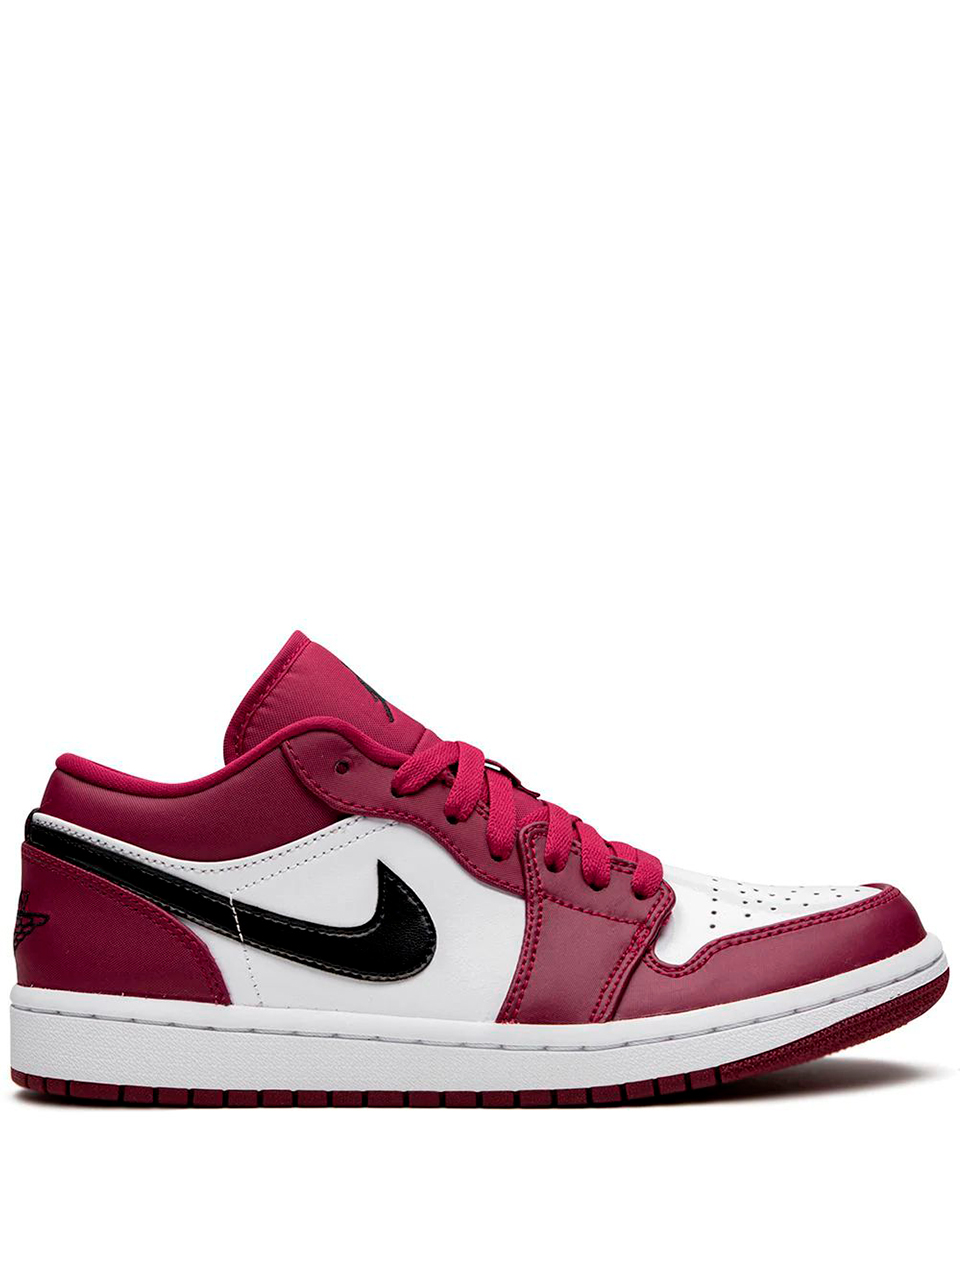 Imagem de: Tênis Nike Air Jordan 1 Low Vermelho